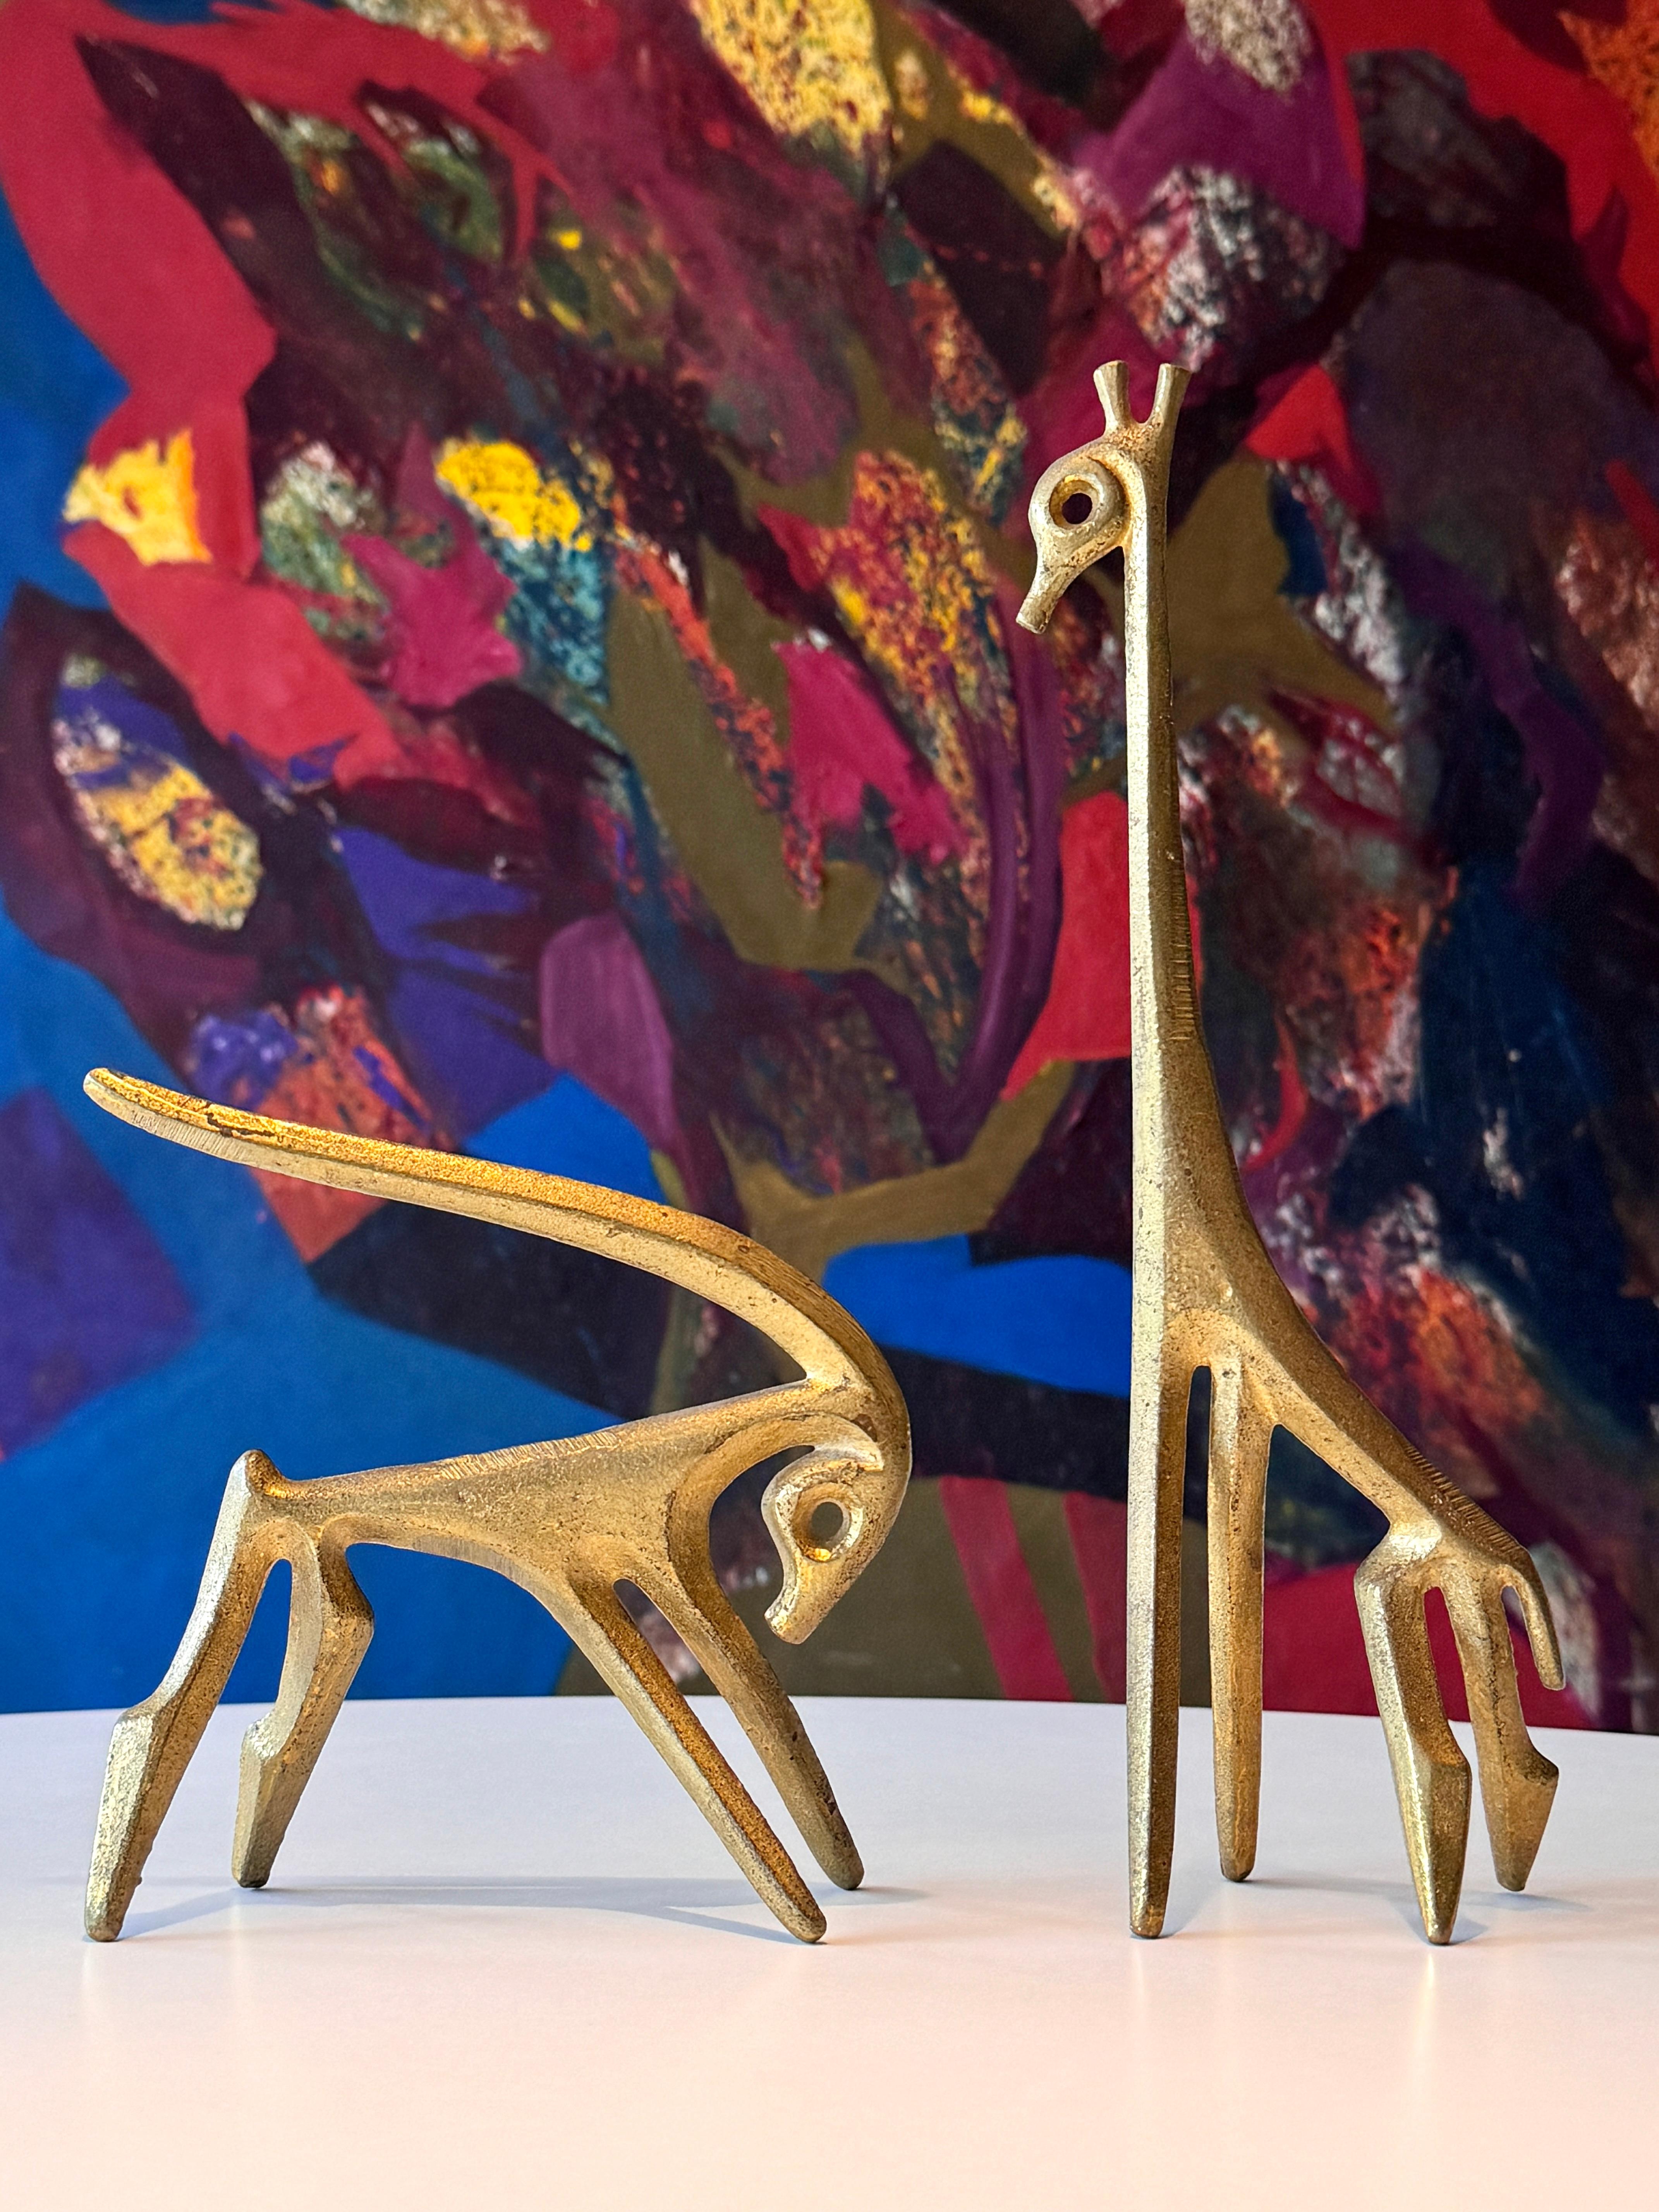 Ein Paar modernistischer Tischskulpturen von Frederic Weinberg, ca. 1950er Jahre
Giraffe und Gazelle aus Bronze
Beide unterschrieben auf Beininnenseite

Giraffe
3,5 x 3 x 11,5 Zoll

gazelle
6 x 2,5 x 6 Zoll